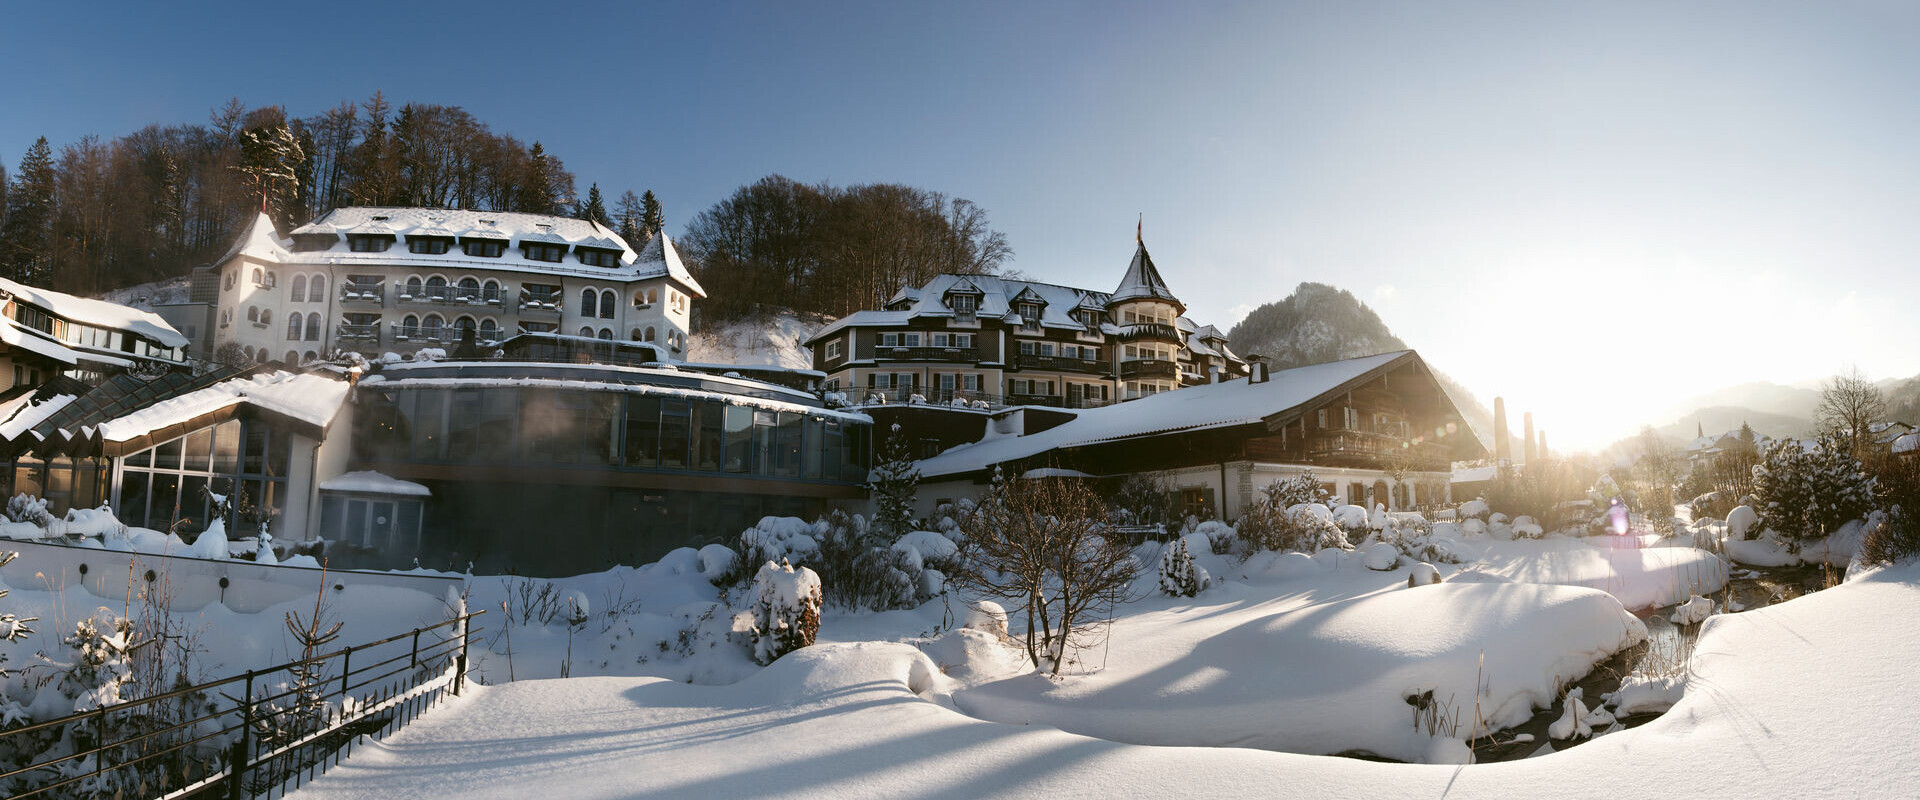 Das 4* Superior Wellnesshotel Ebner's Waldhof am Fuschlsee mit Schnee und Außenpool.